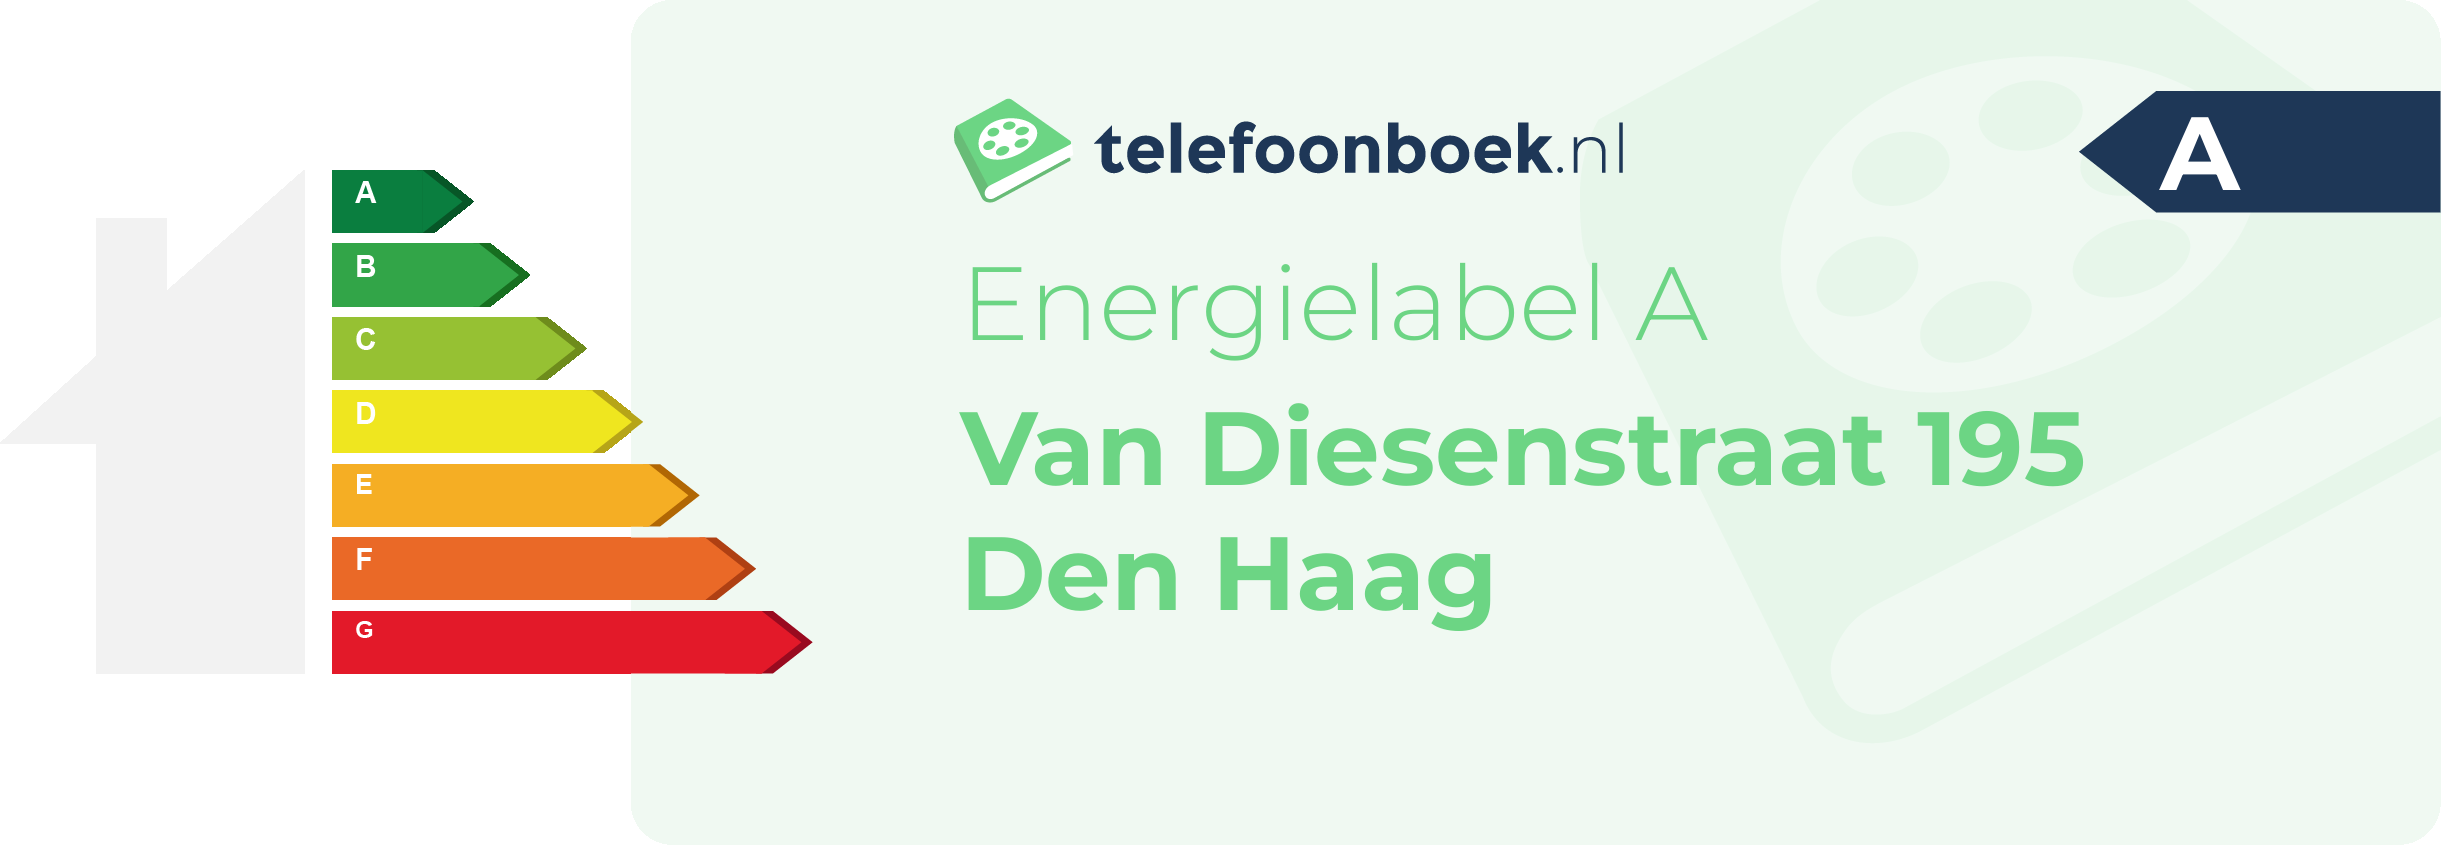 Energielabel Van Diesenstraat 195 Den Haag